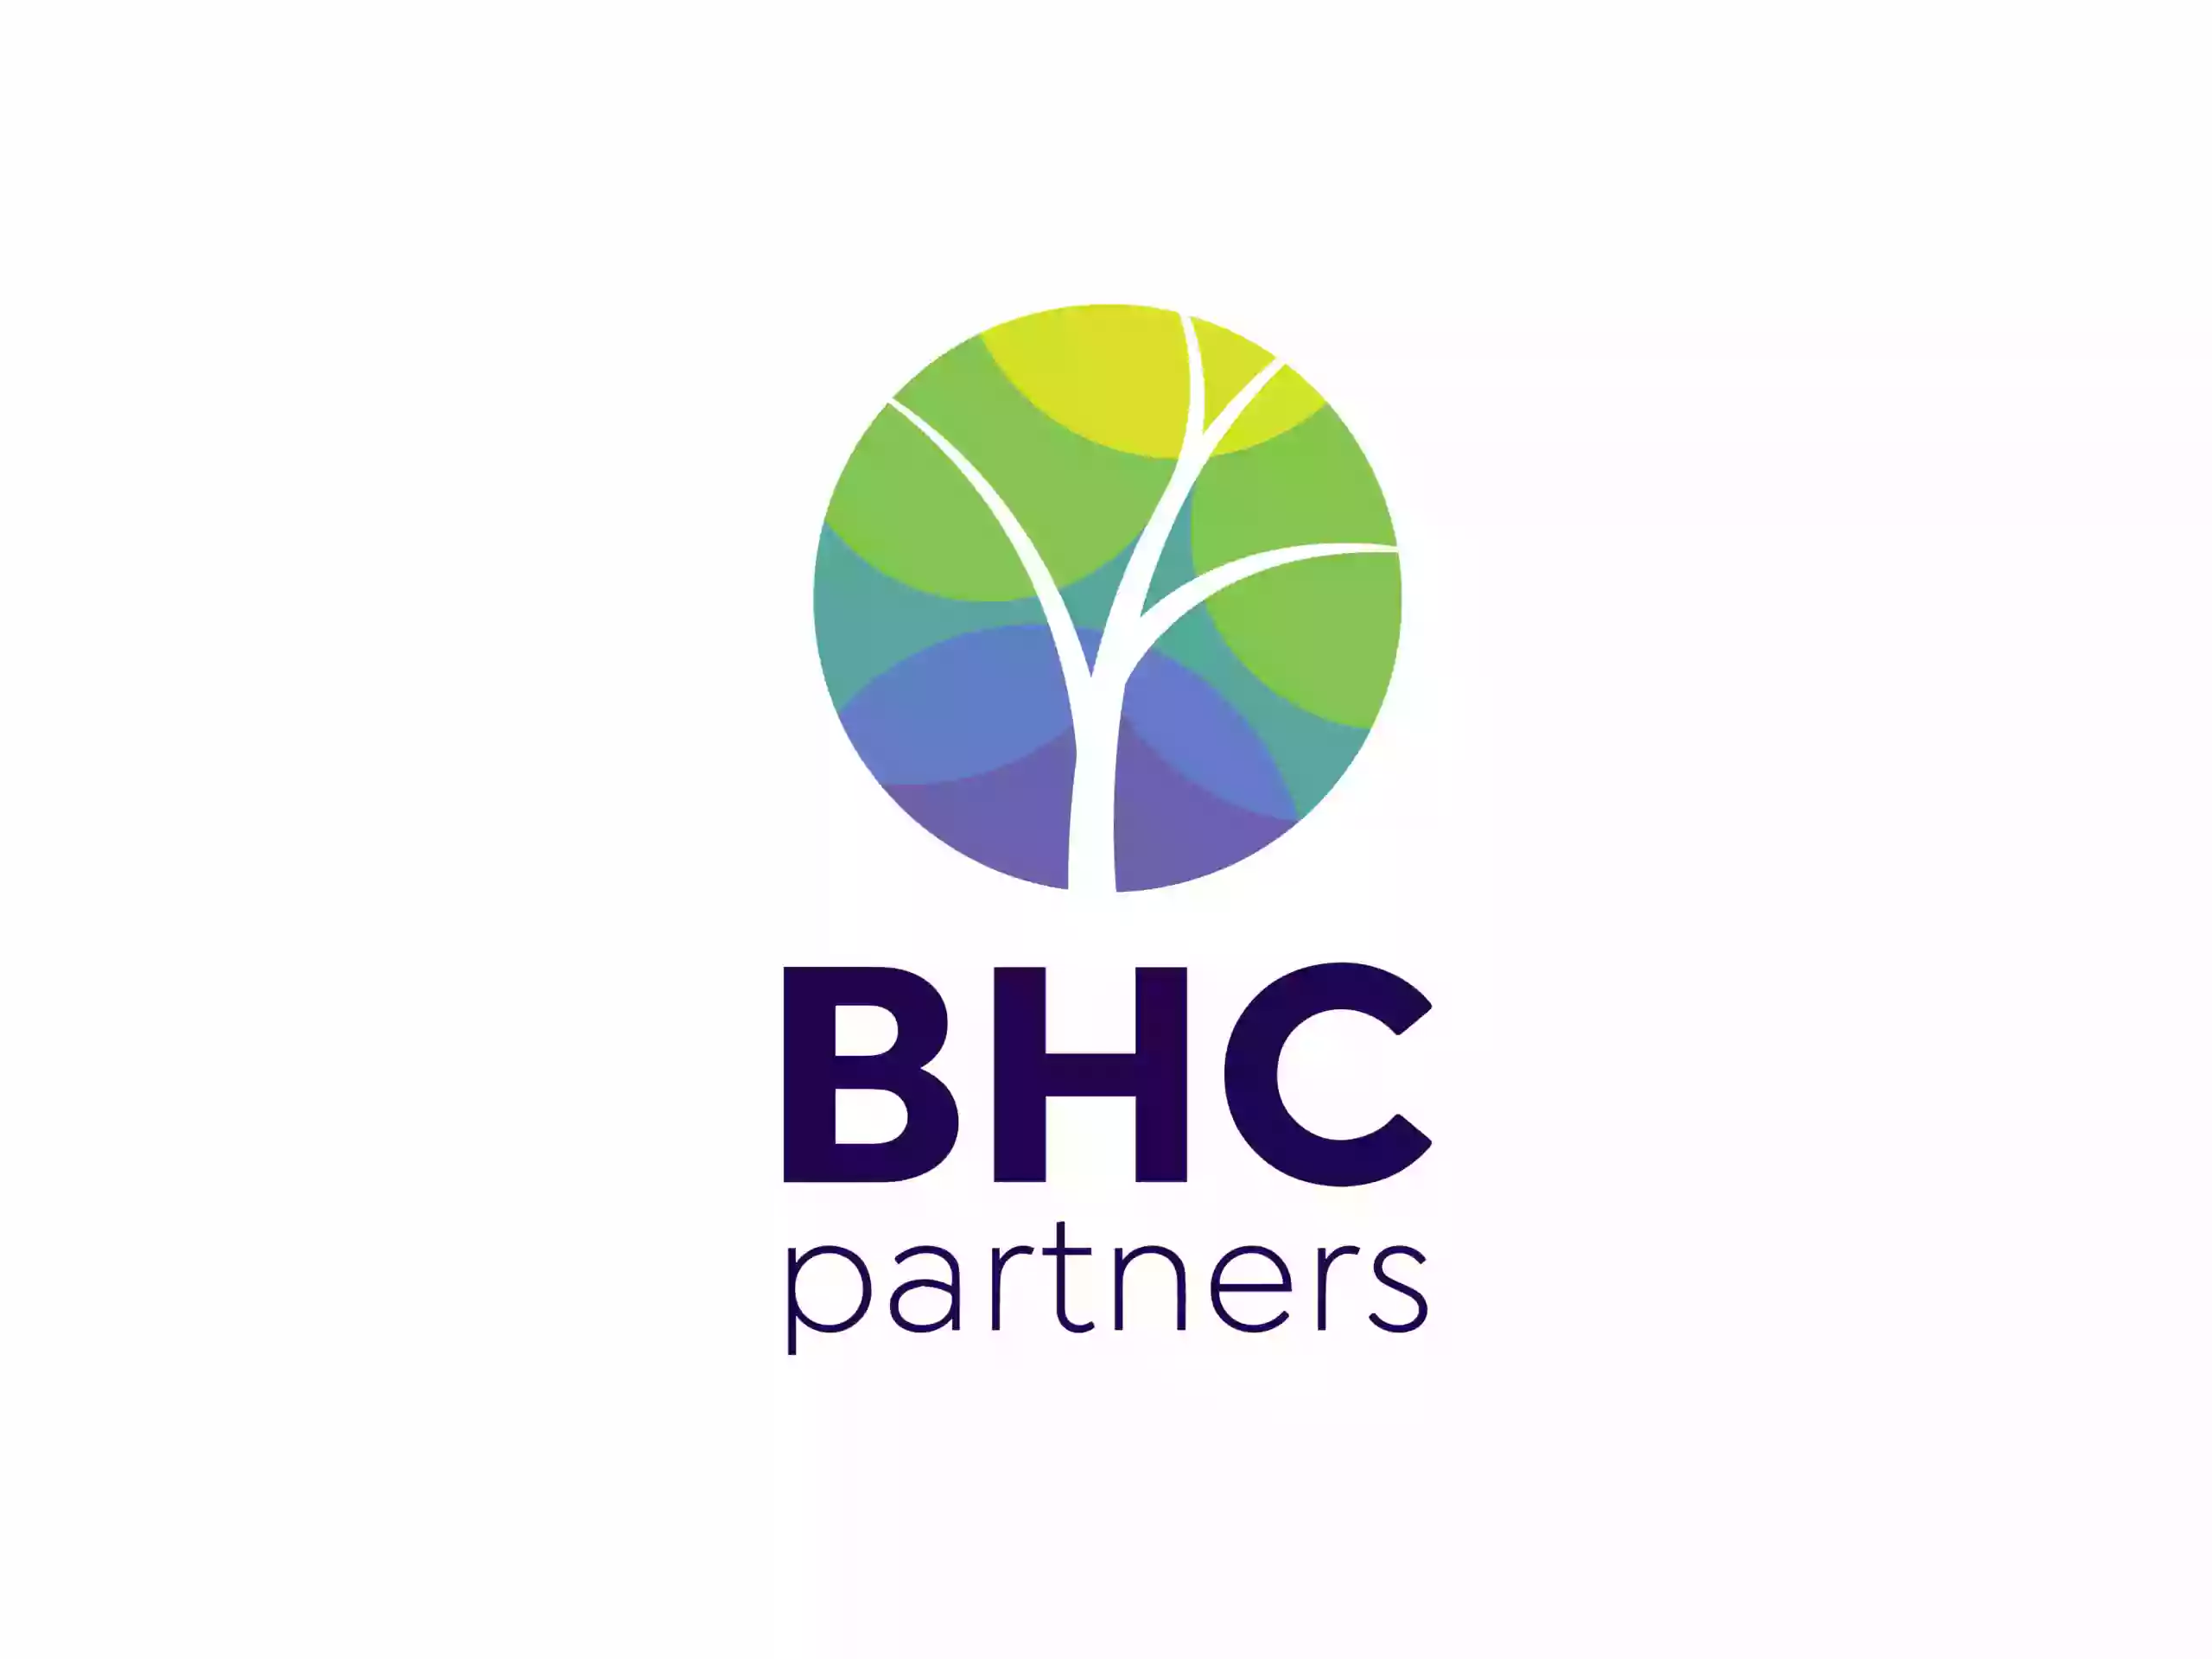 BHC Partners